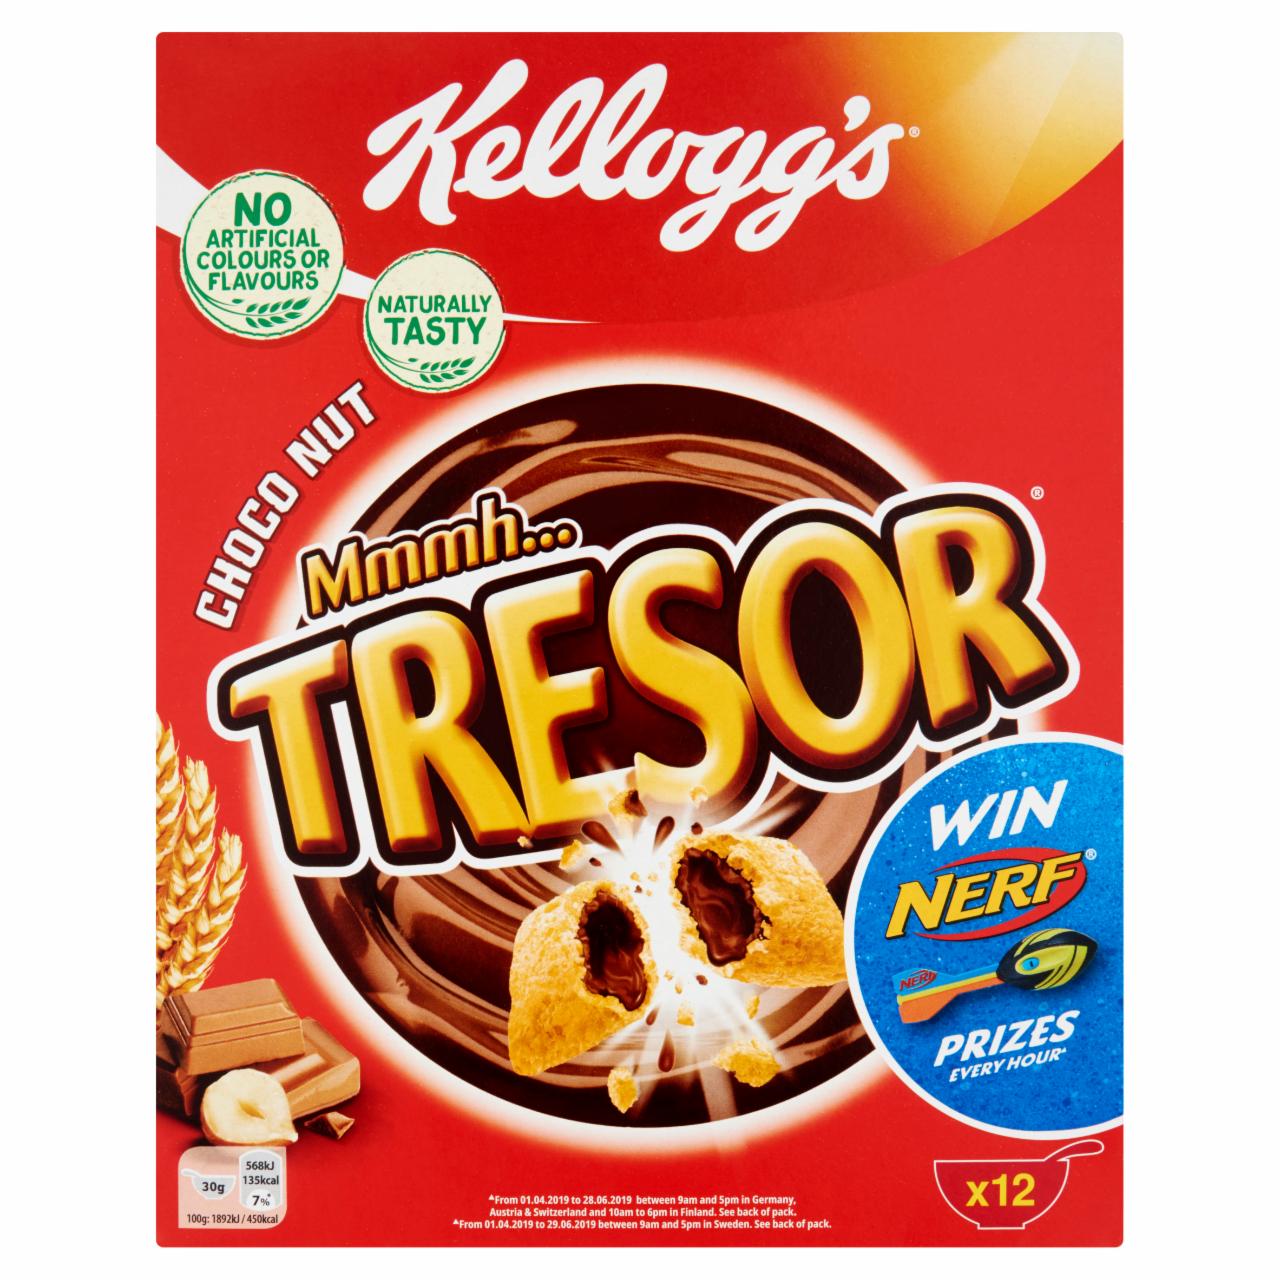 Képek - Kellogg's Tresor csokoládés-mogyorós gabonapehely 375 g